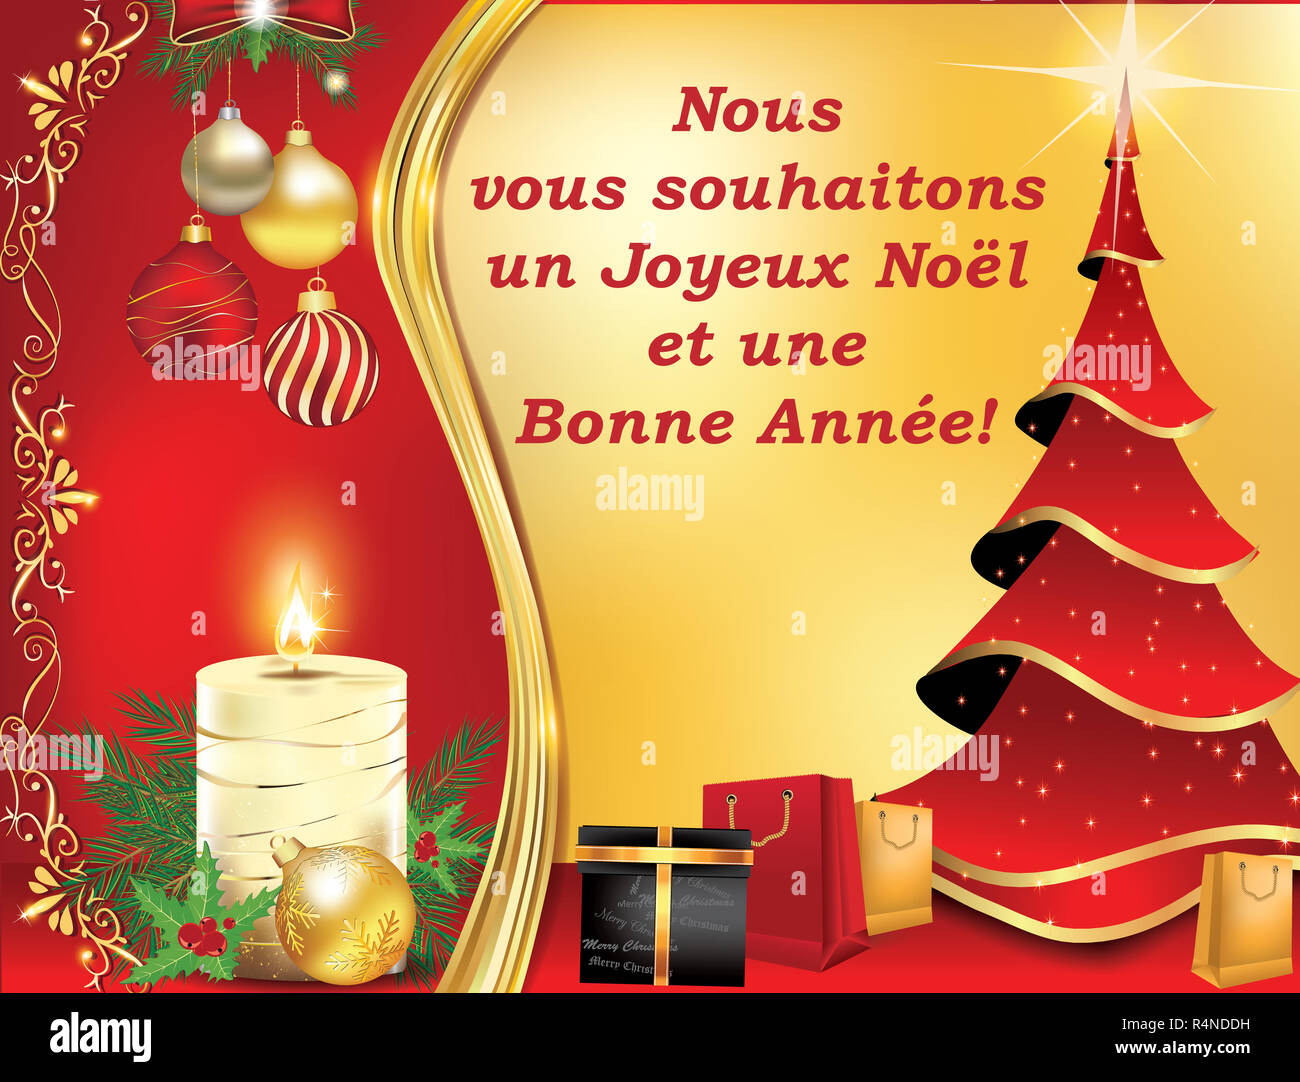 Buon Natale Traduzione Francese.Biglietto Di Auguri Francese Per Natale Immagini E Fotos Stock Alamy